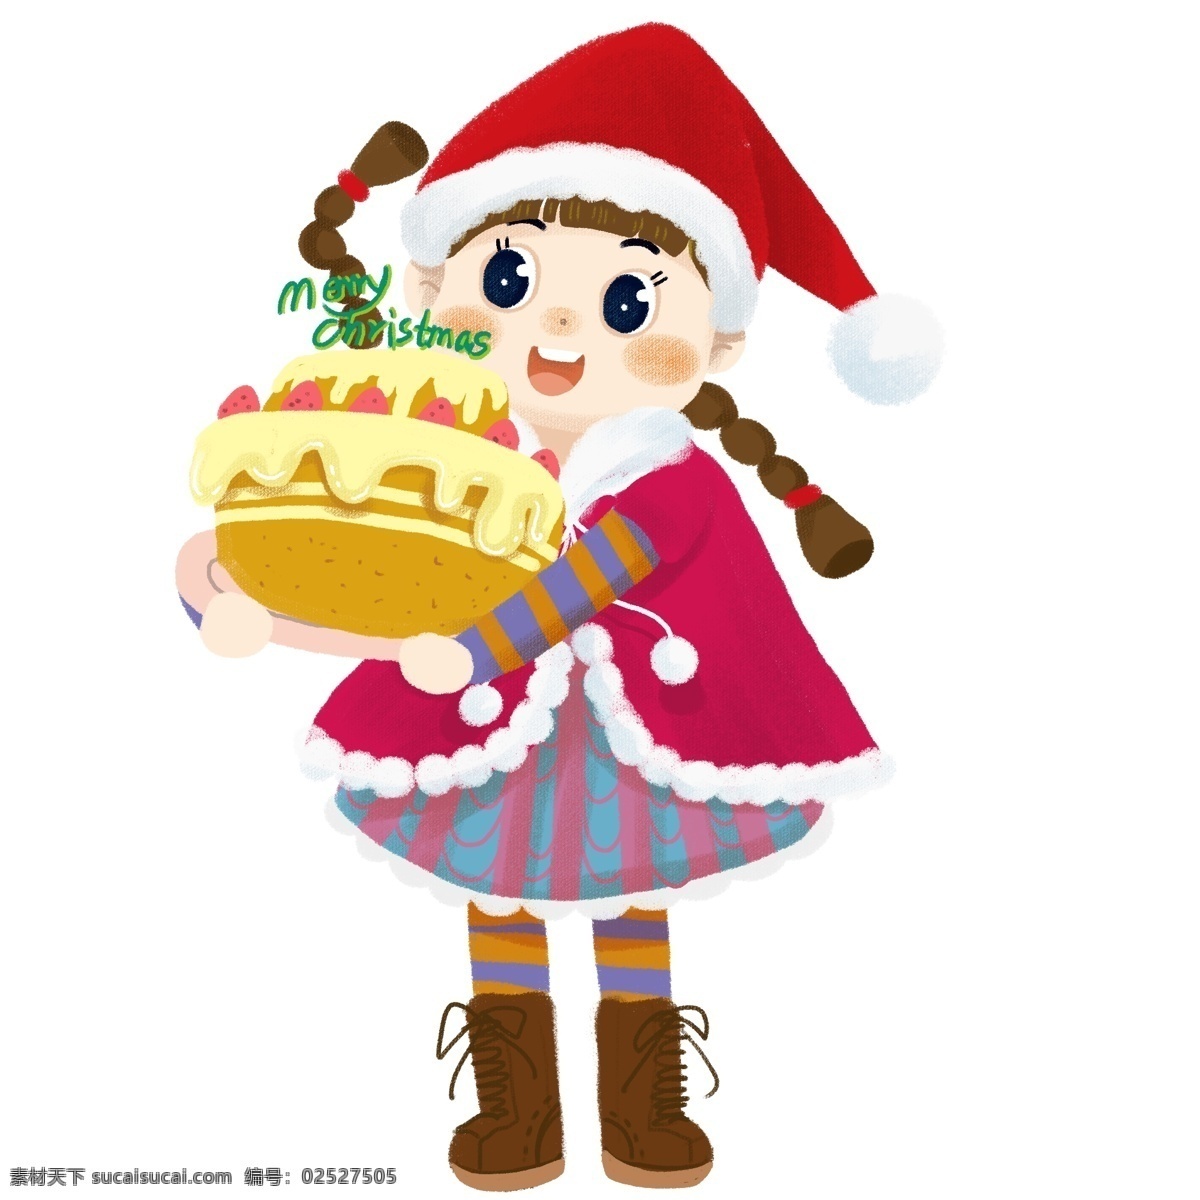 圣诞节 请 大家 吃 蛋糕 小女孩 圣诞 节日 男孩女孩系列 礼物 传统习俗 可爱 卡通风 童话风格 边框 插画 壁纸 装饰画